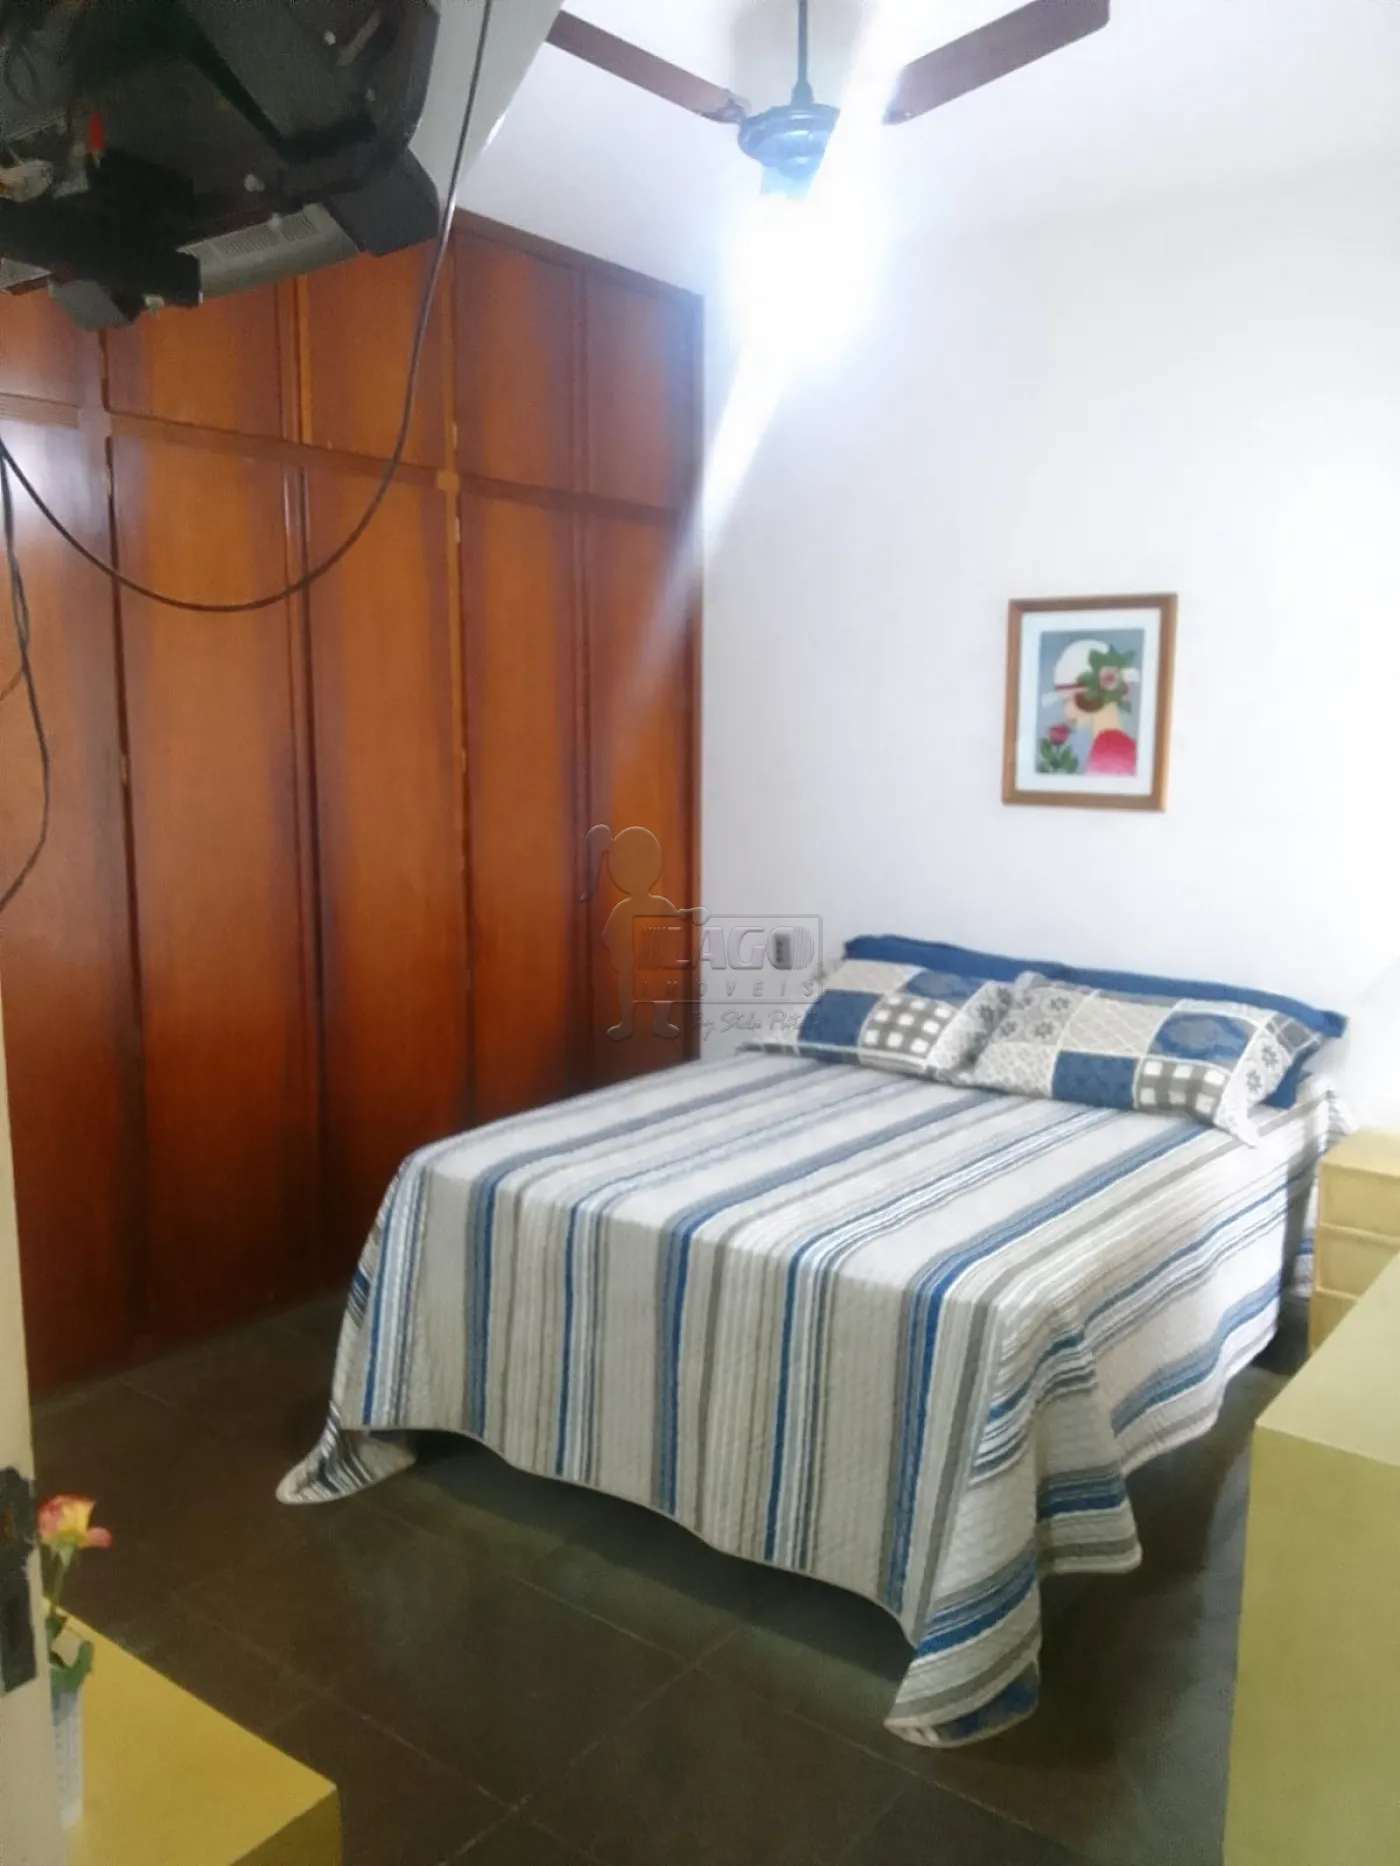 Comprar Apartamento / Padrão em Ribeirão Preto R$ 400.000,00 - Foto 8